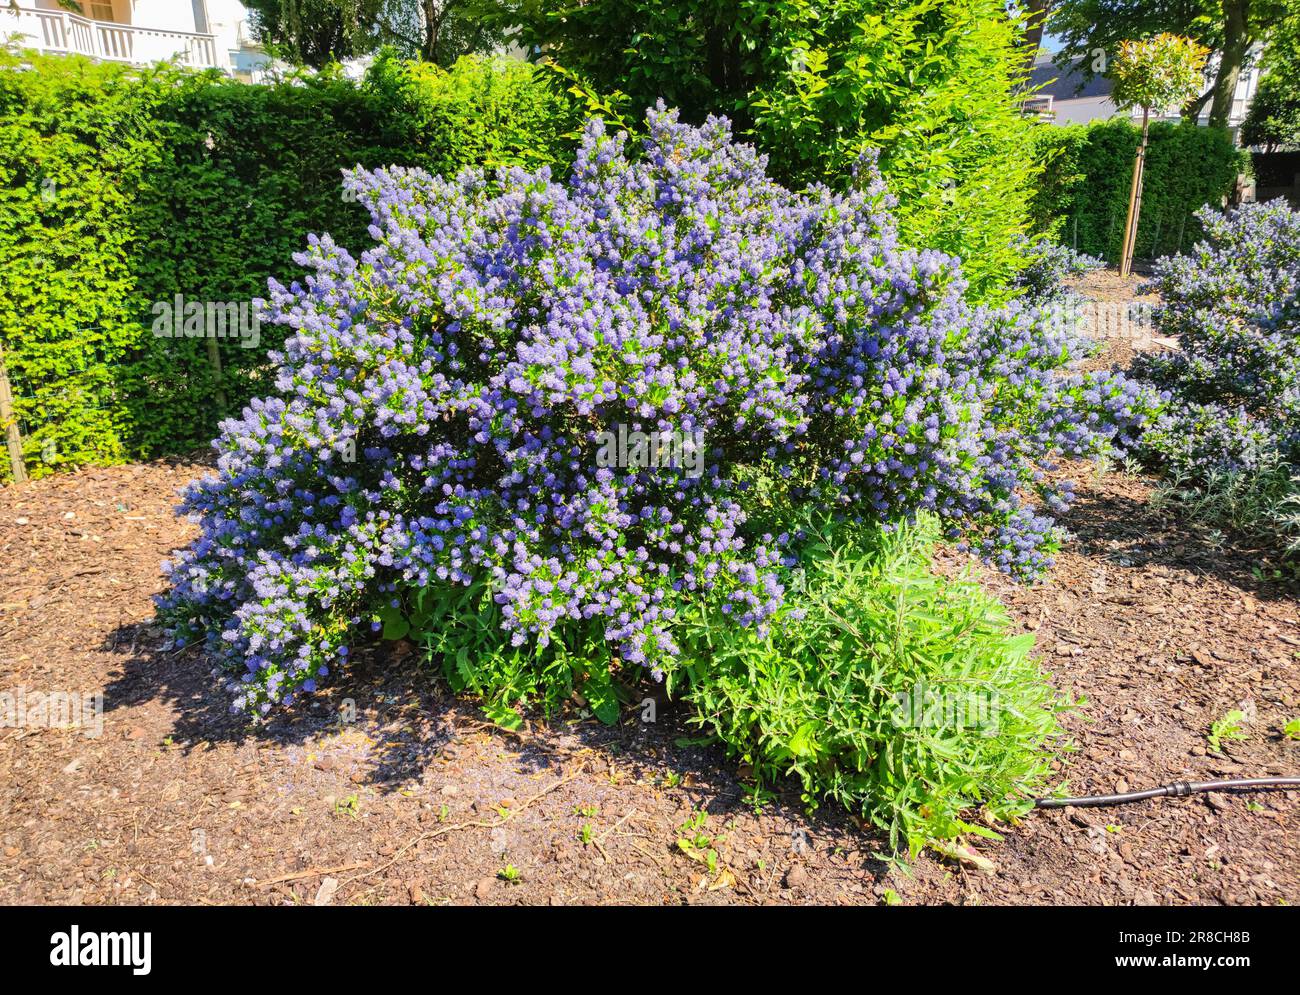 Sträucher mit kleinen violetten bis blauen Blumen in einem Garten Stockfoto